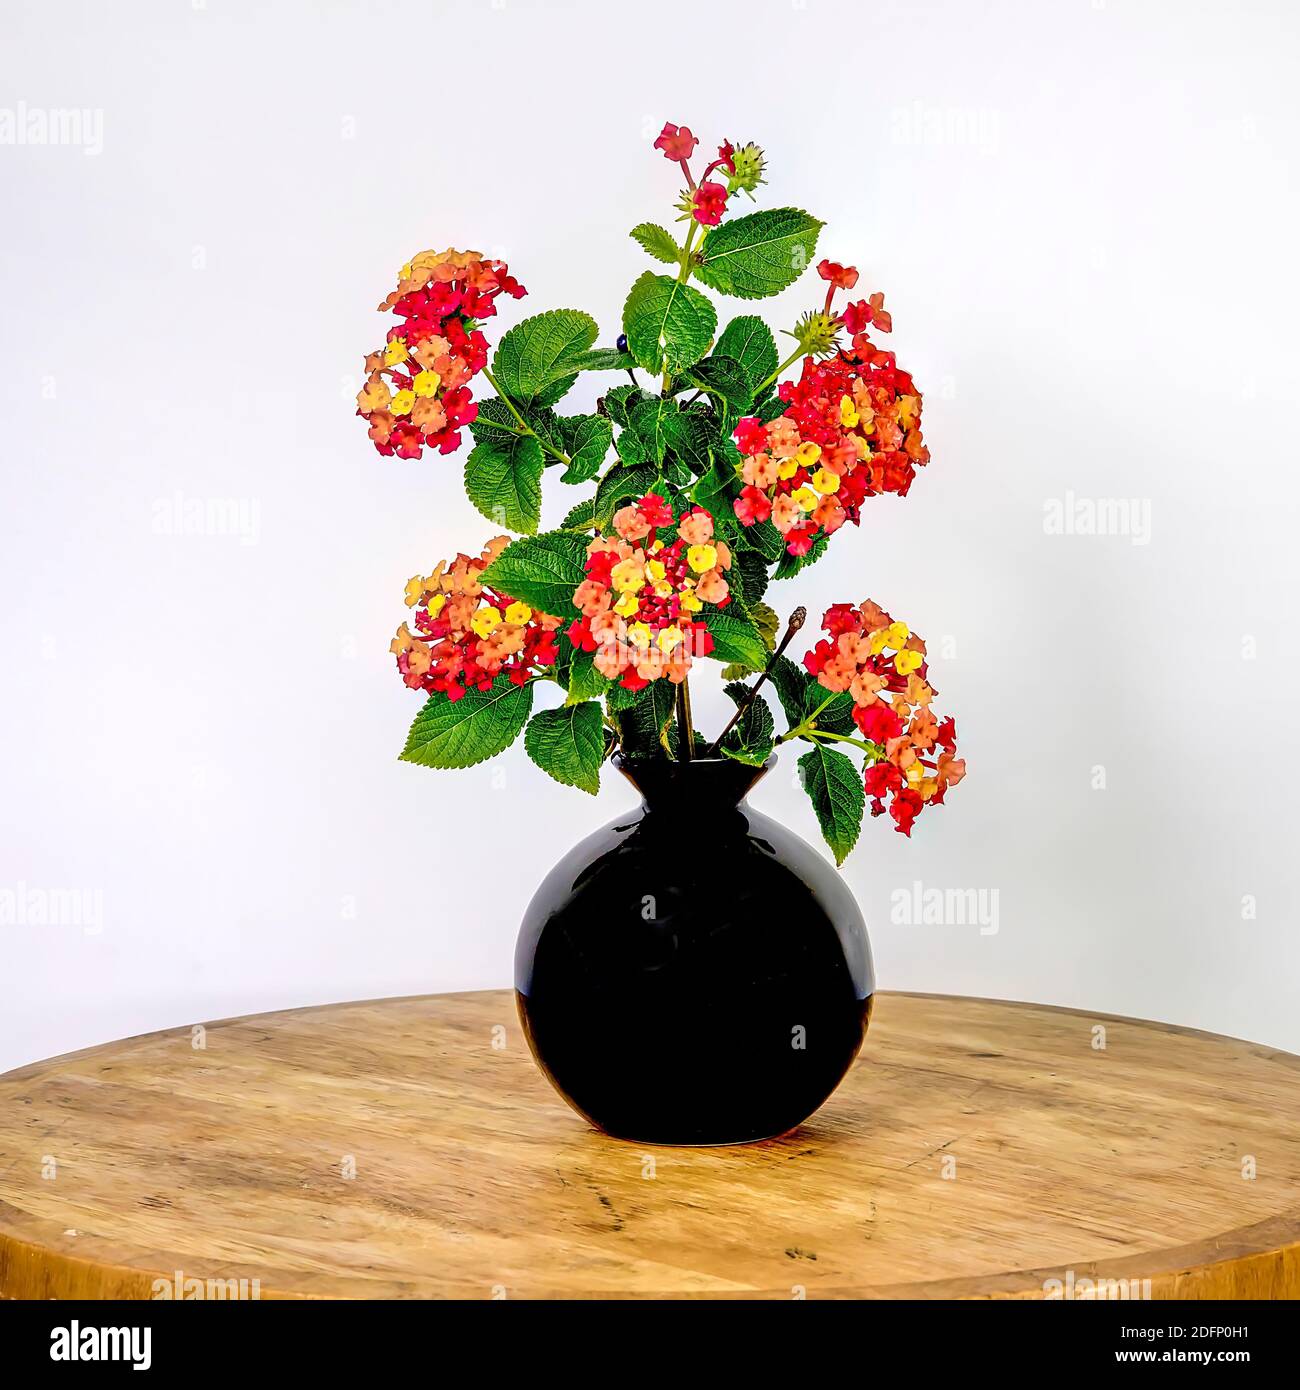 Begonia Blumen. Isoliert. Schwarz glänzende Vase mit Garten beronia bunte Blumen auf weißem Hintergrund. Stockbild. Stockfoto